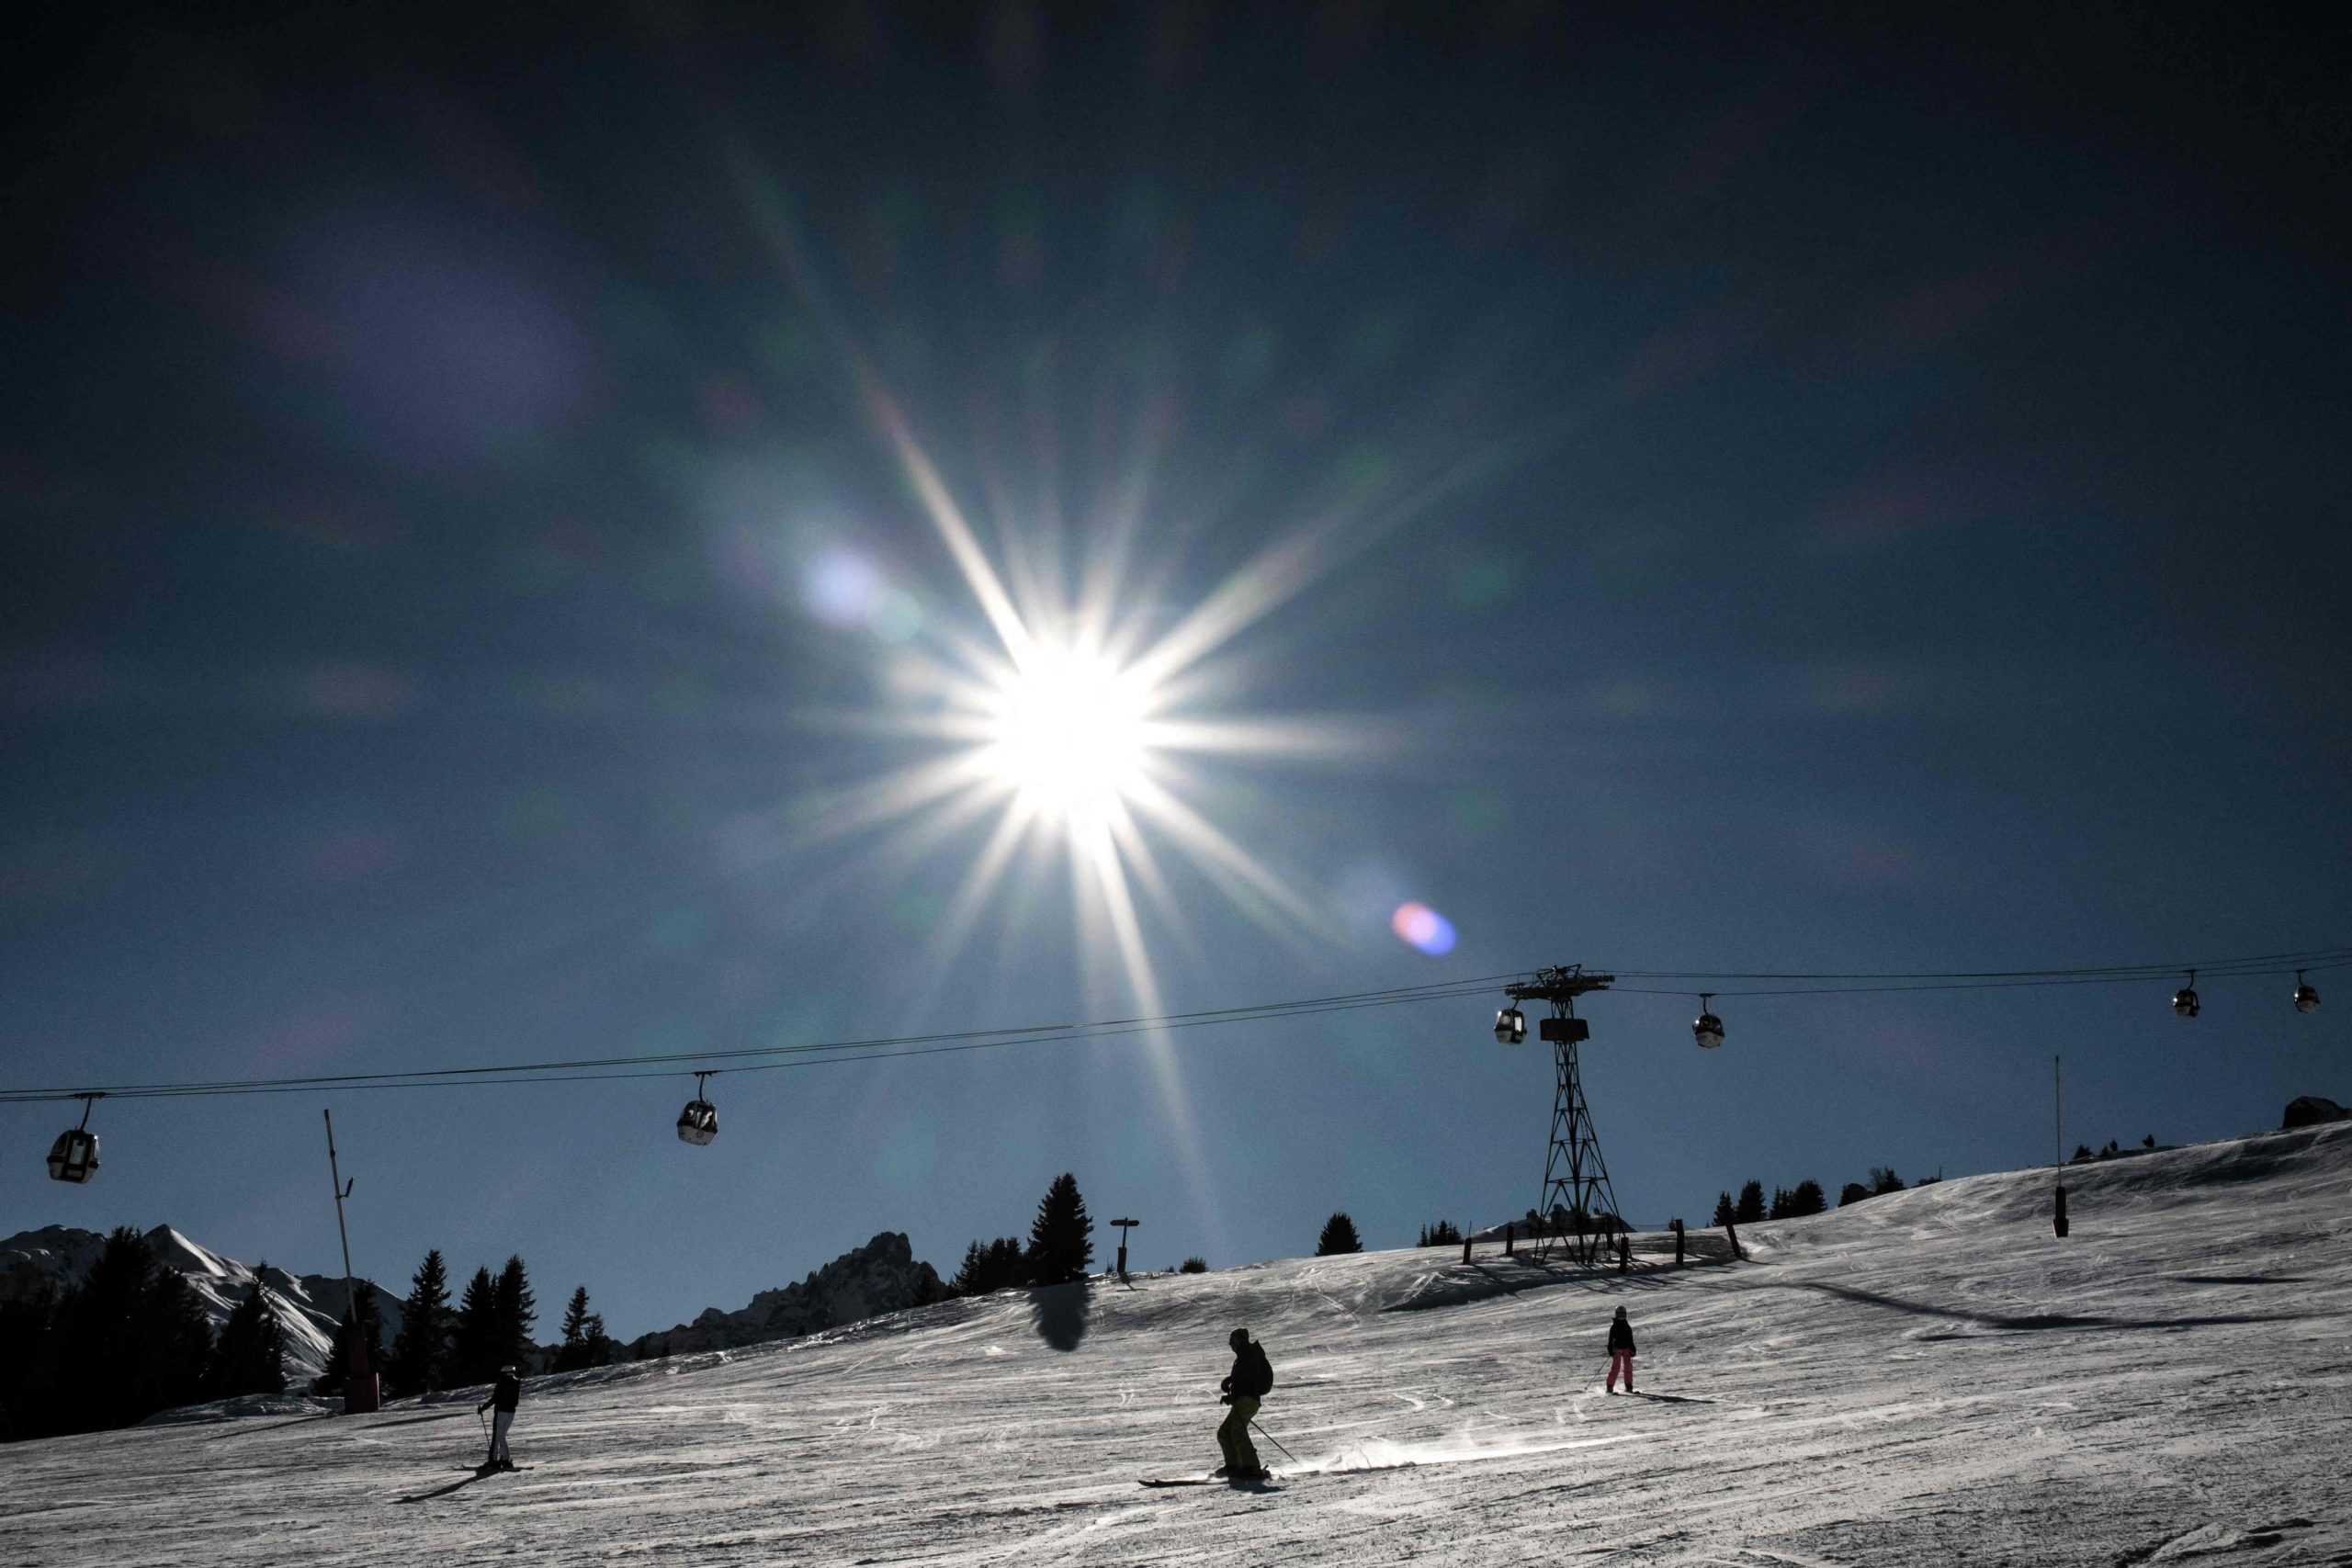 Frankreich: Fünfjährige stirbt bei Ski-Unfall